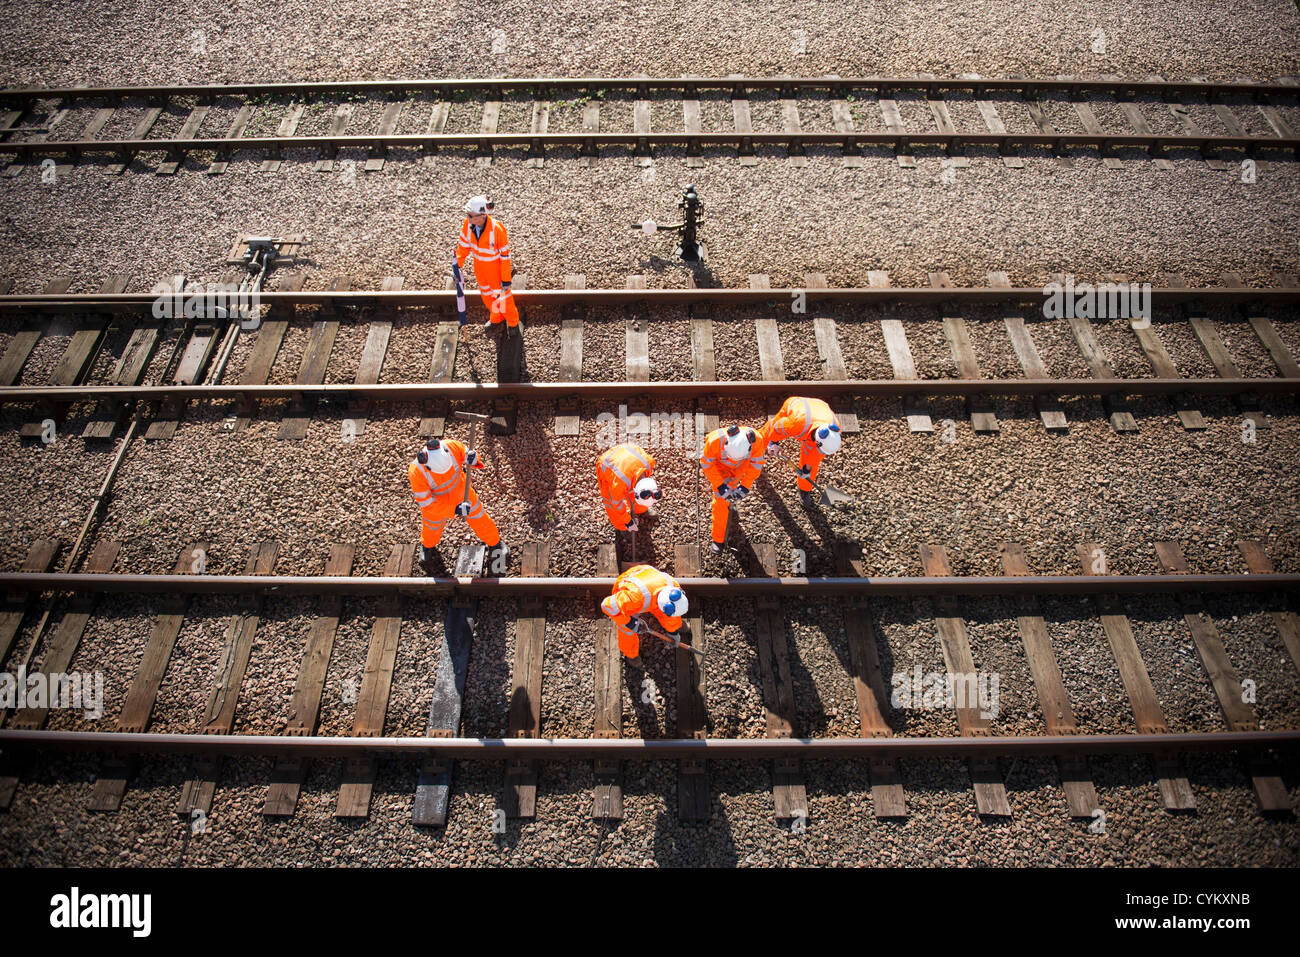 Los trabajadores ferroviarios examinar vías de tren Foto de stock